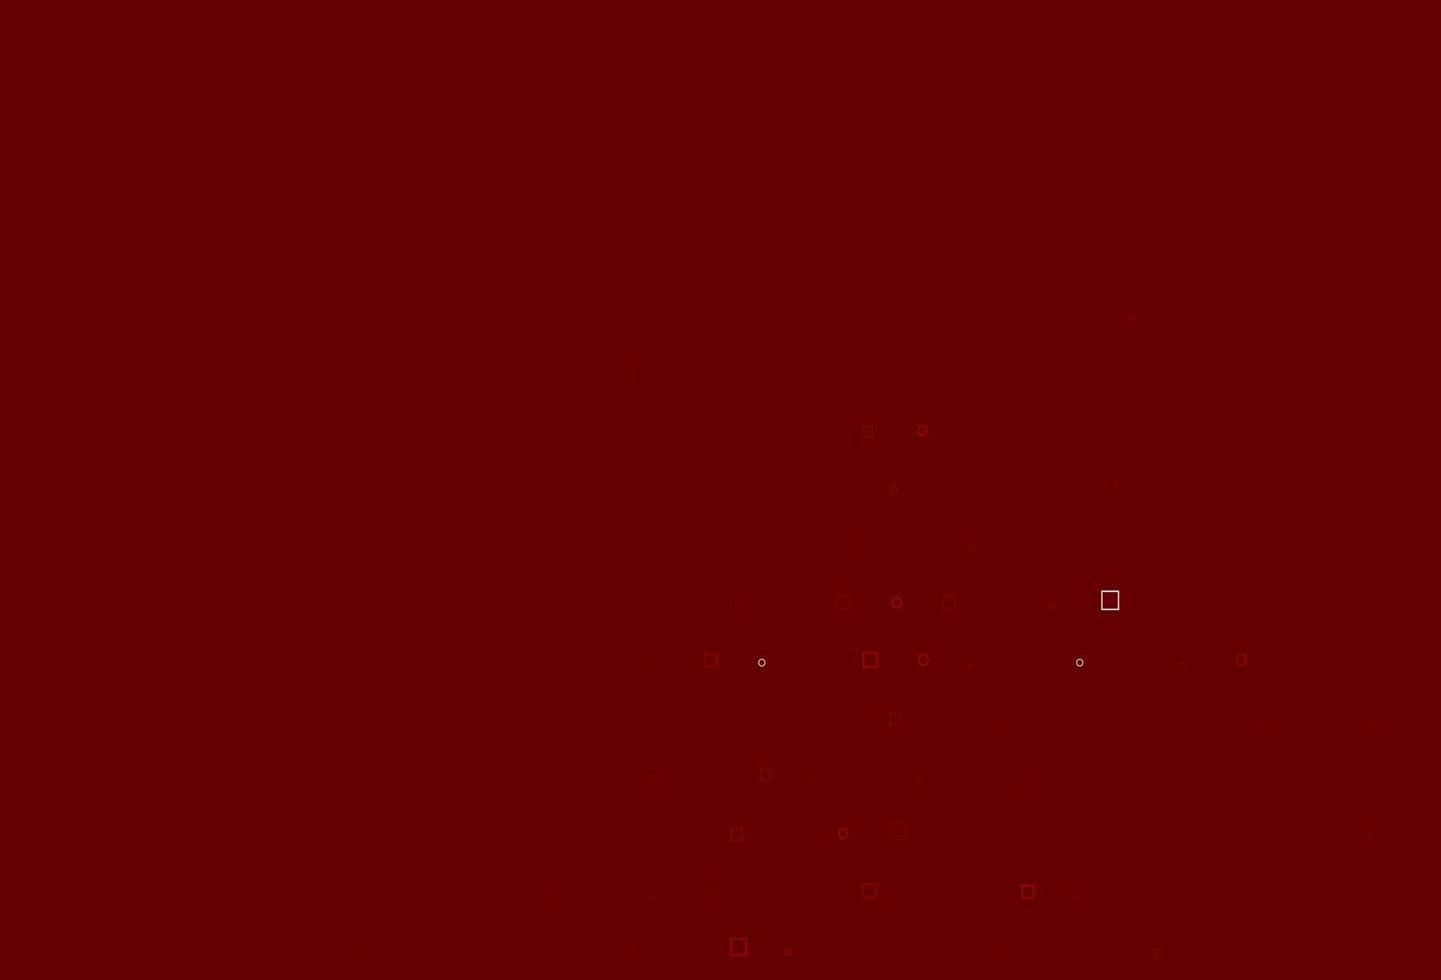 cenário de vetor vermelho claro com pontos, manchas, cubos.